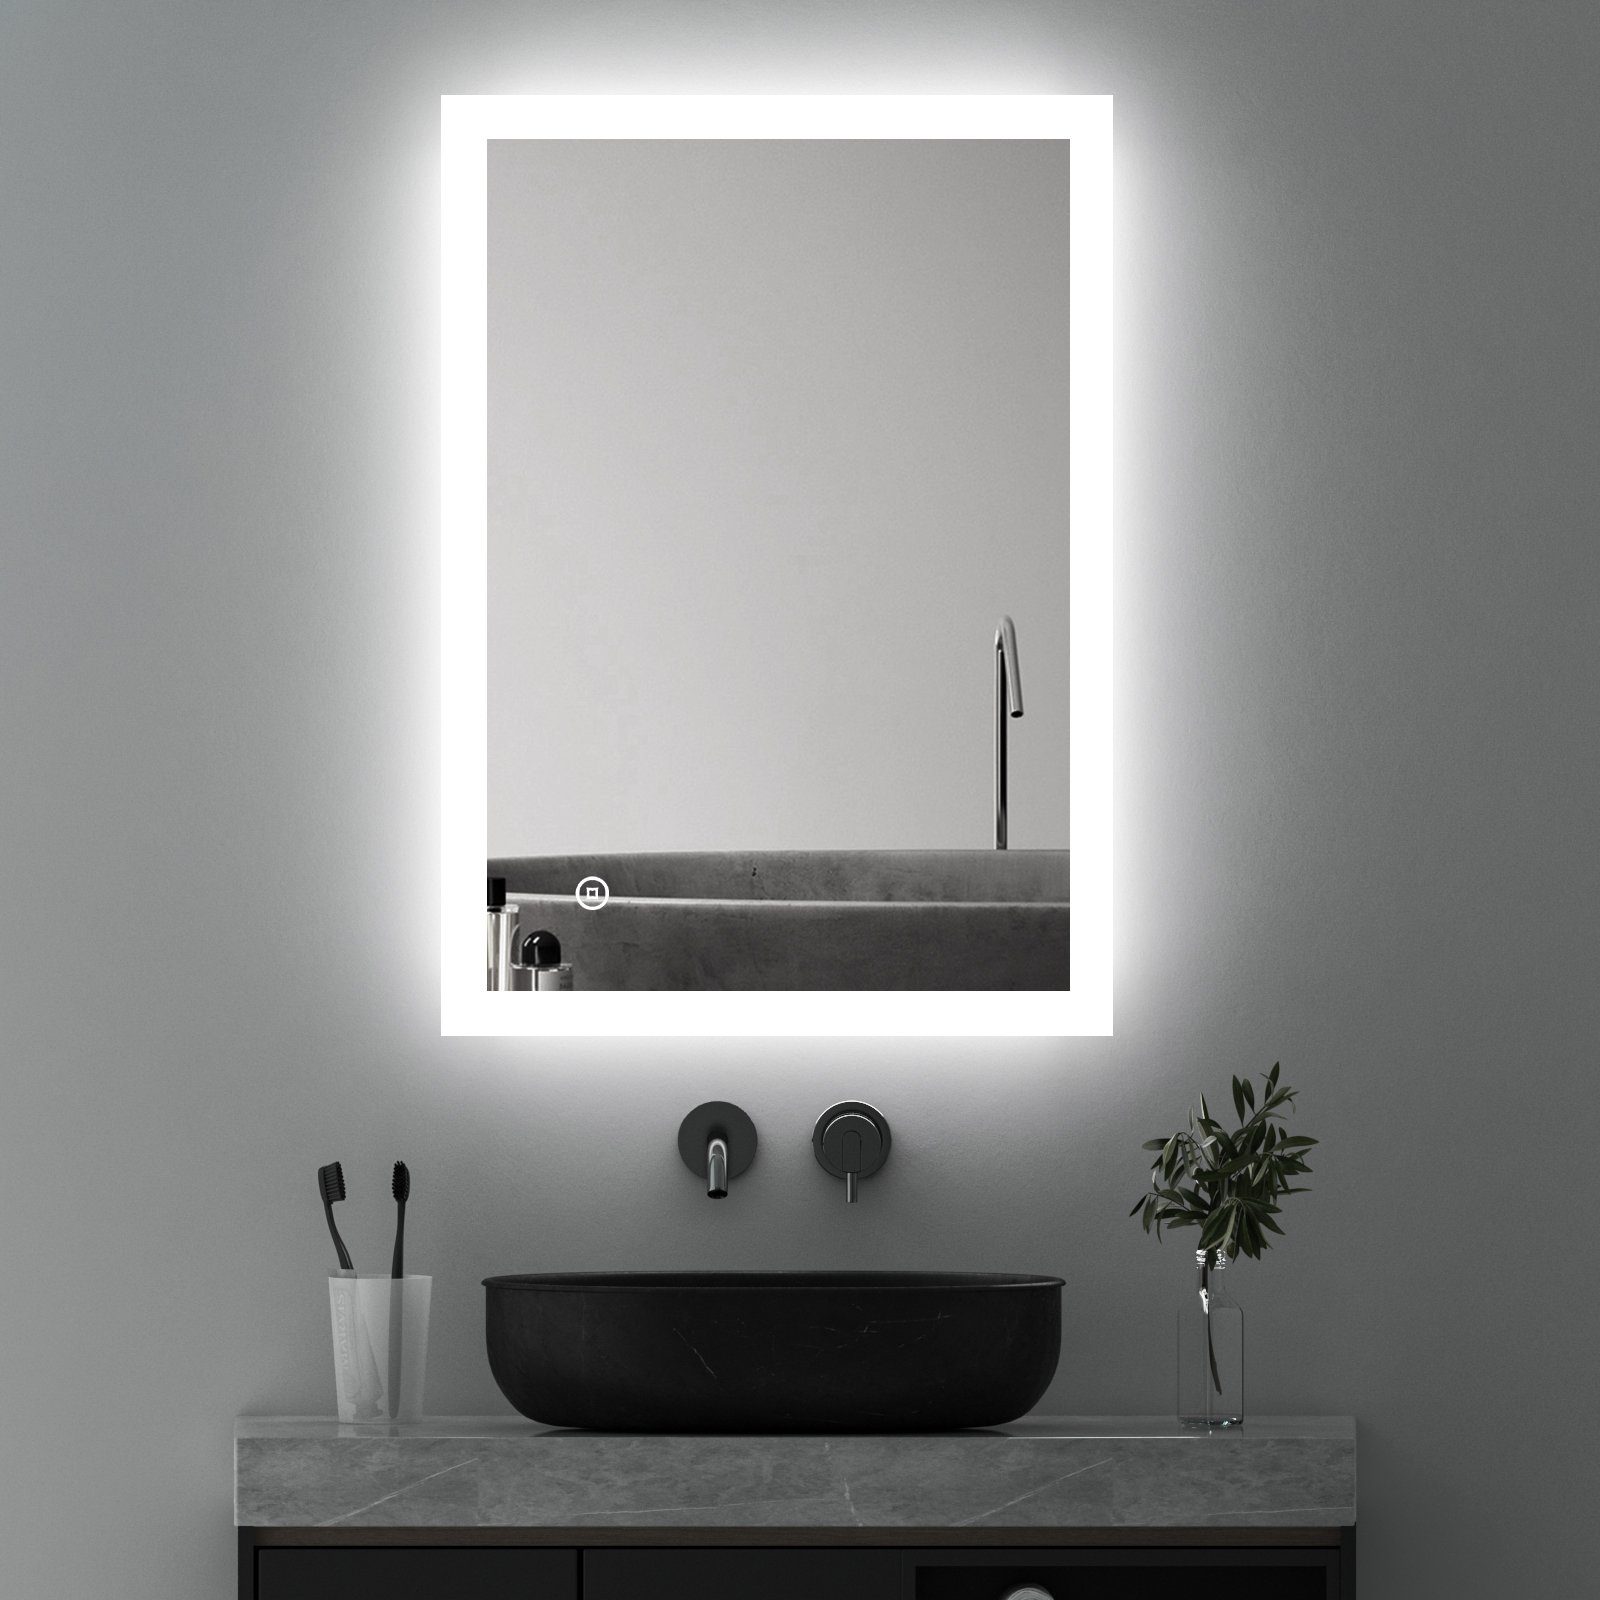 WDWRITTI Badspiegel Wandspiegel mit Beleuchtung, (Badezimmerspiegel Led Led, 3 Bad Spiegel Touch/Wandschalter), Lichtfarbe Helligkeit 80x60 dimmbar Lichtspiegel, energiesparender,IP44 Speicherfunktion